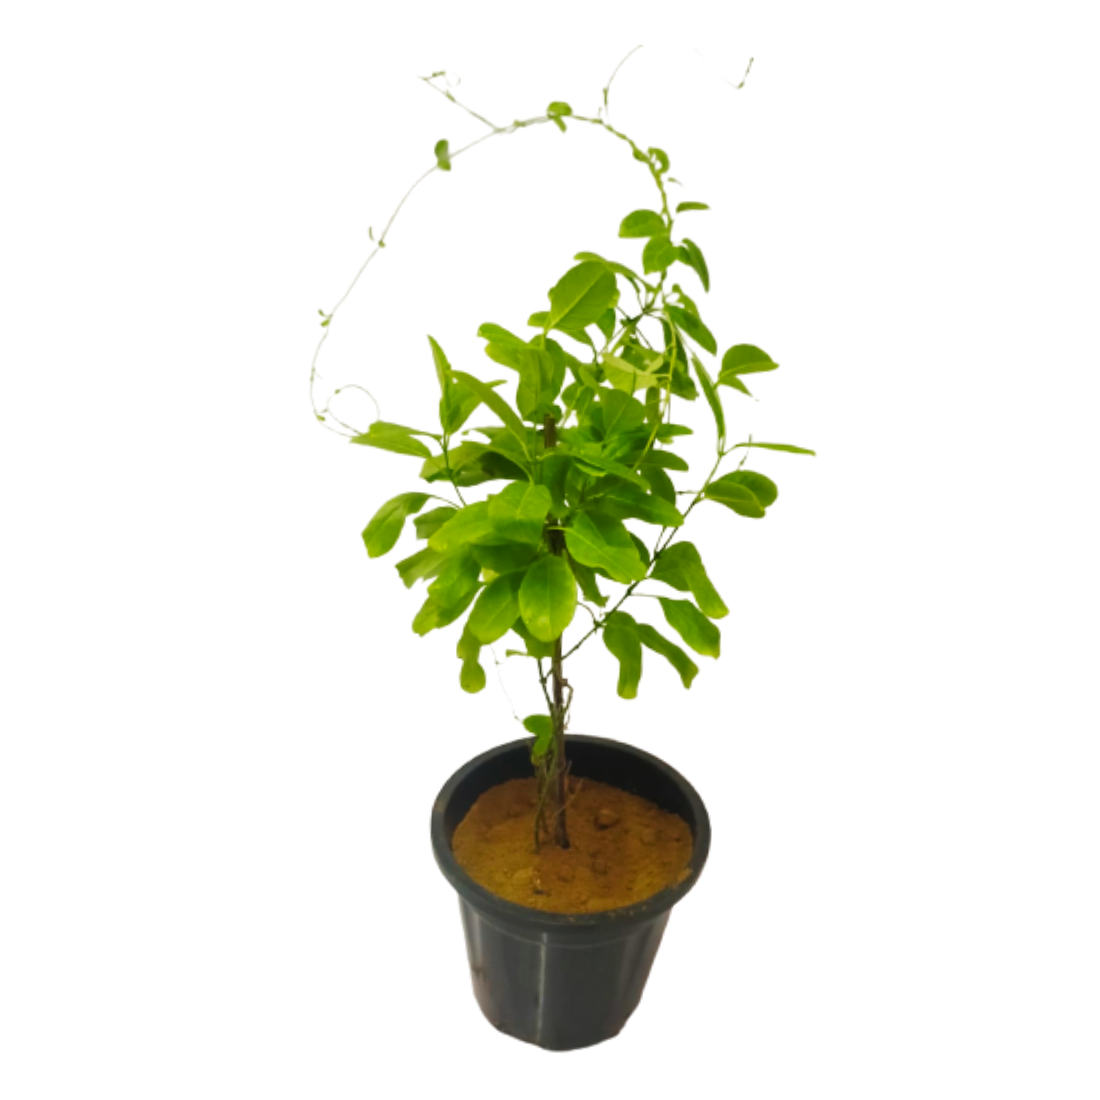 buy online bel plant, alamanda bel for garden, buy online plants 